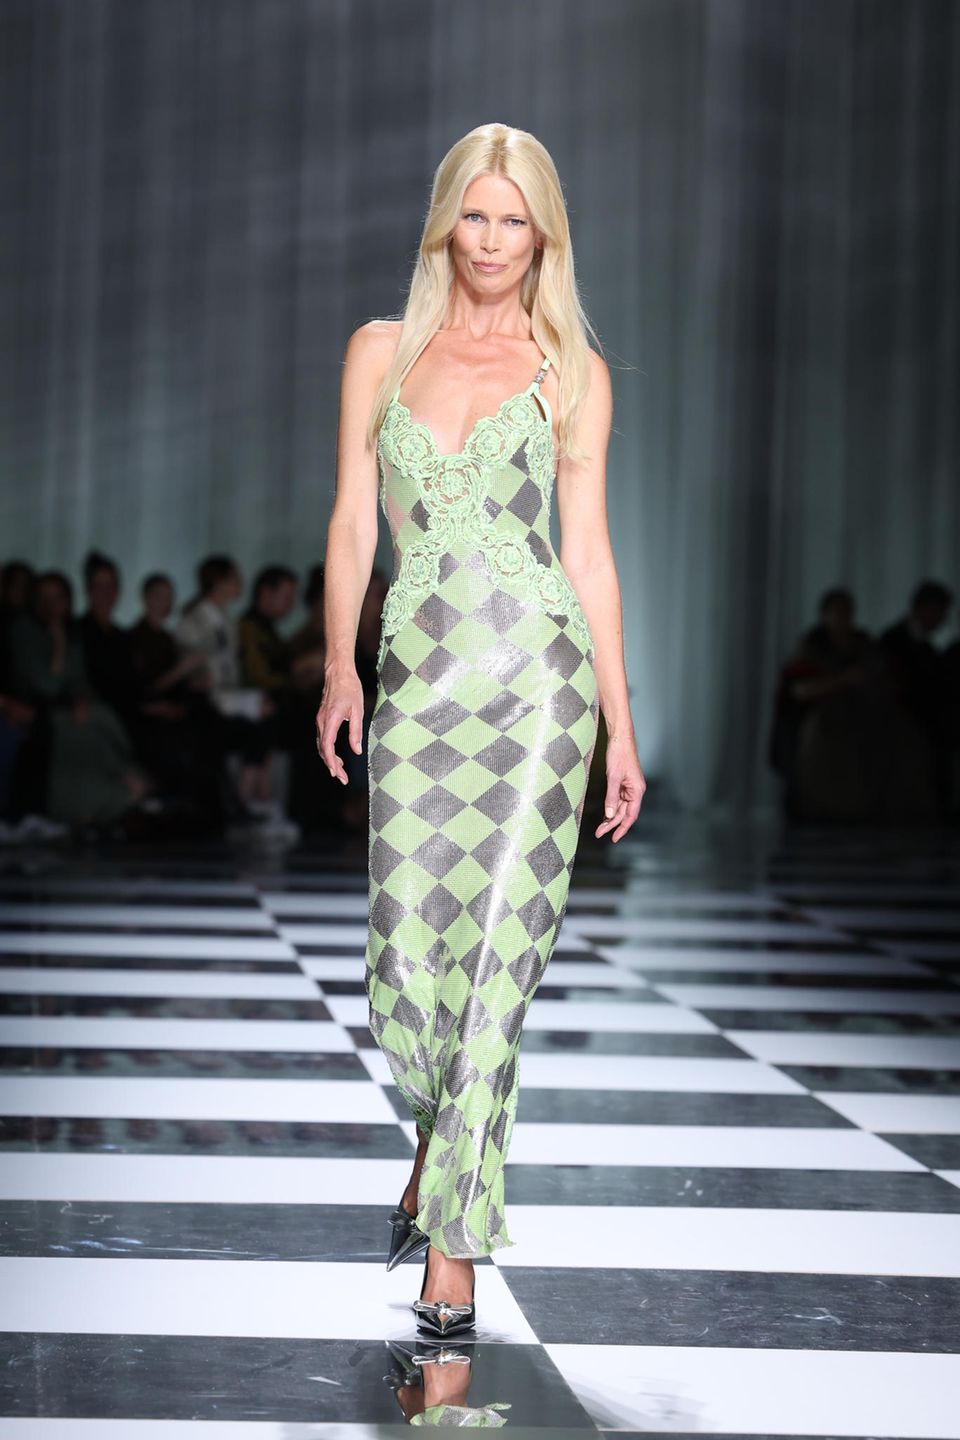 Das Beste kommt zum Schluss – zumindest bei Versace. "Cloodia" ist zurück auf dem Catwalk. Für die Frrühjahr/Sommershow 2024 von Versace wird Claudia Schiffer zum Comeback auf den Laufsteg gebeten und präsentiert das finale Kleid des italienischen Modehauses. In einem grün-silbernen Kleid schwebt das 90s-Supermodel über den Runway und wird von Fans gefeiert.